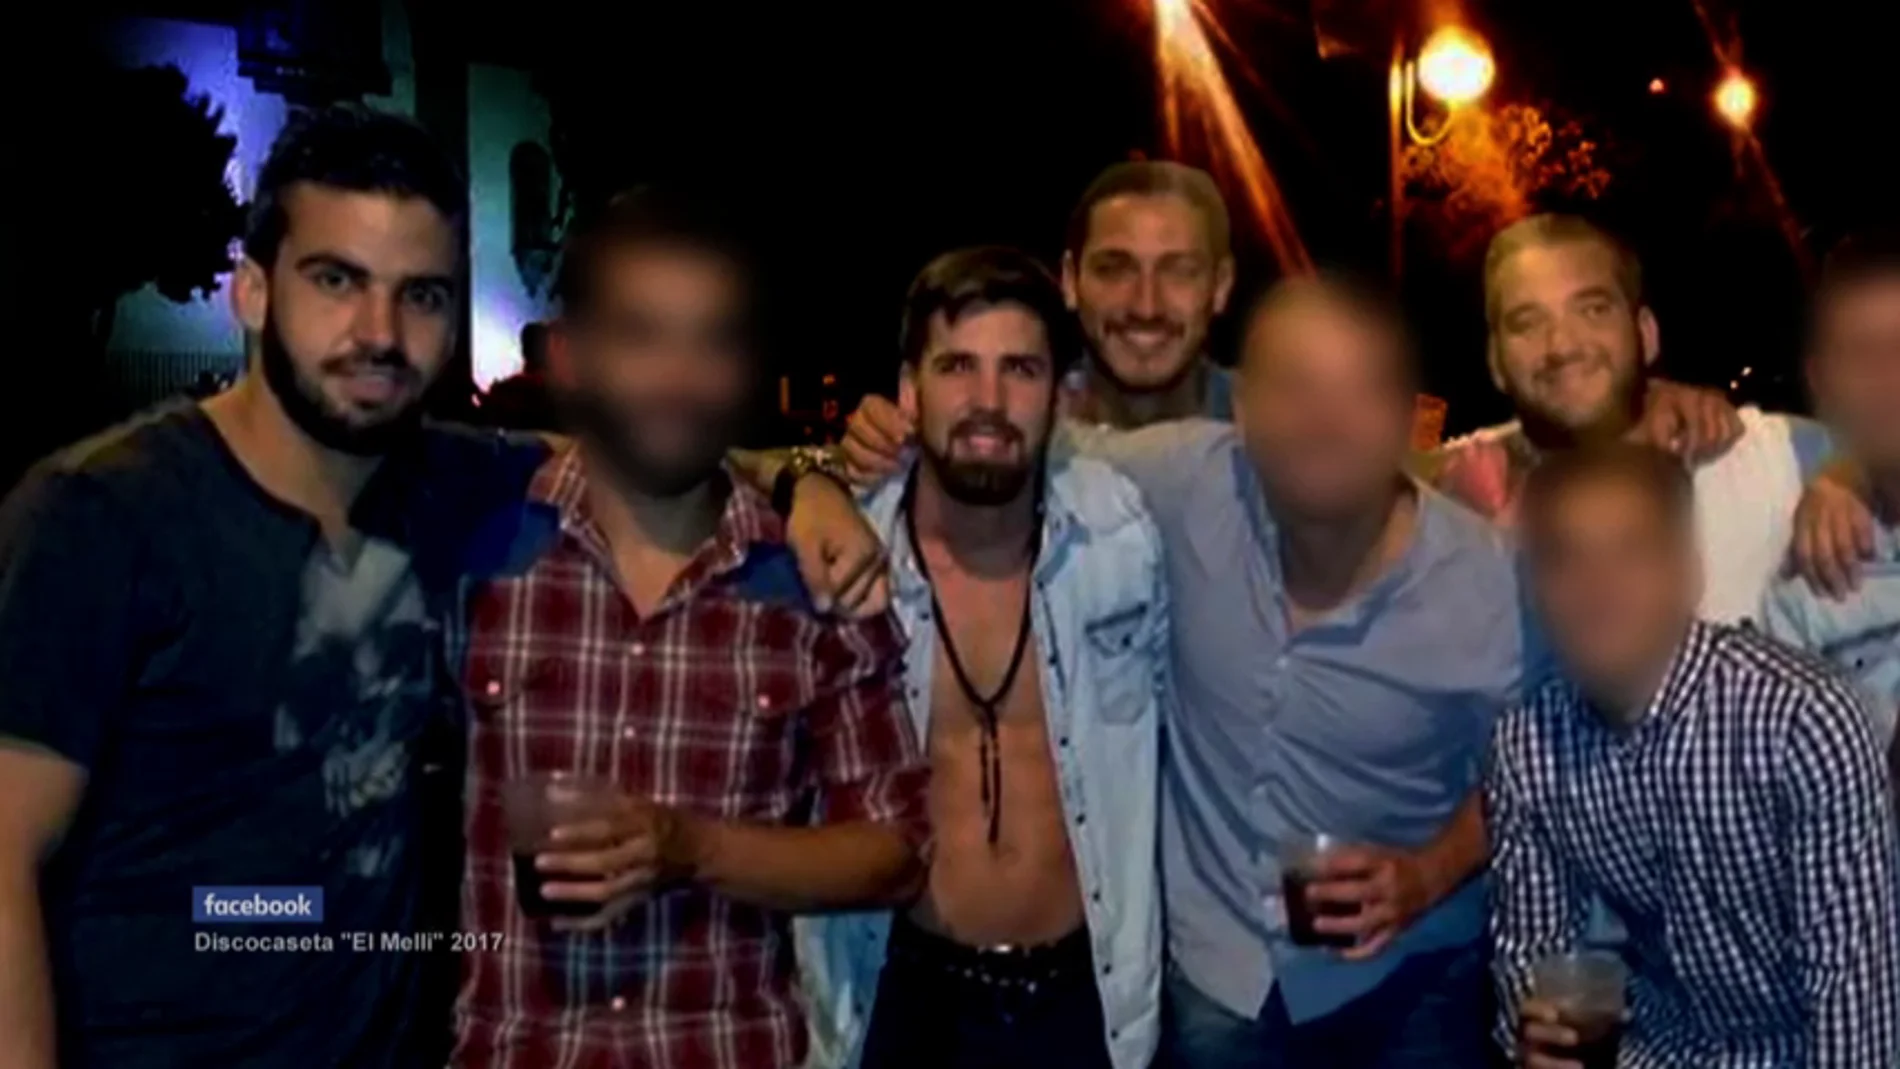 El testimonio de la víctima de 'La Manada' en Pozoblanco: "Abrí los ojos y me vi completamente desnuda"